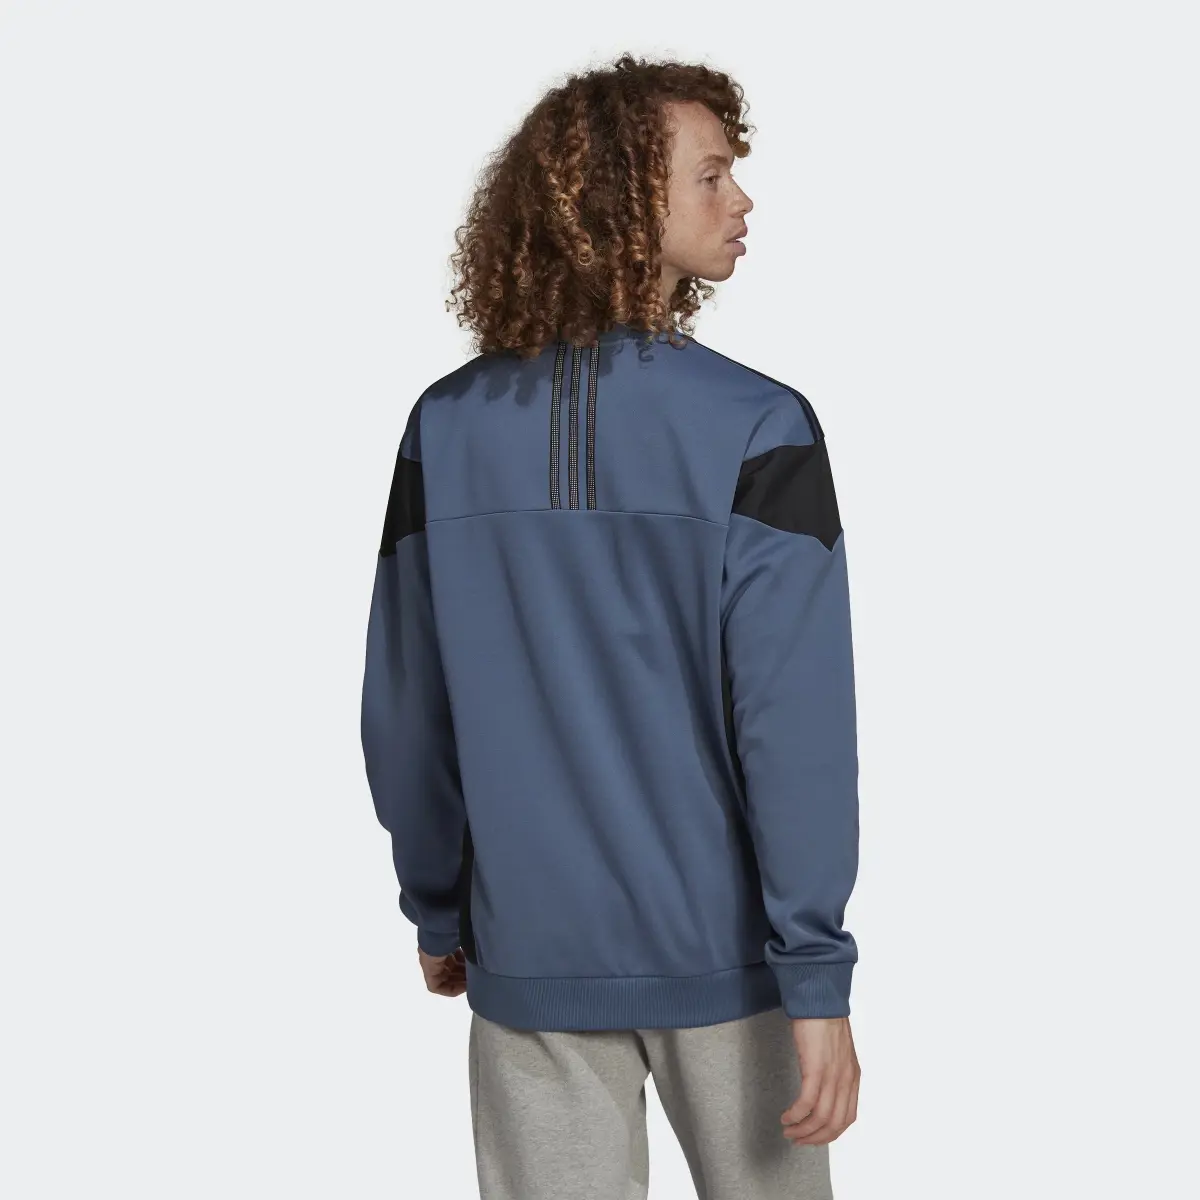 Adidas ID96 22 Crew Sweatshirt. 3